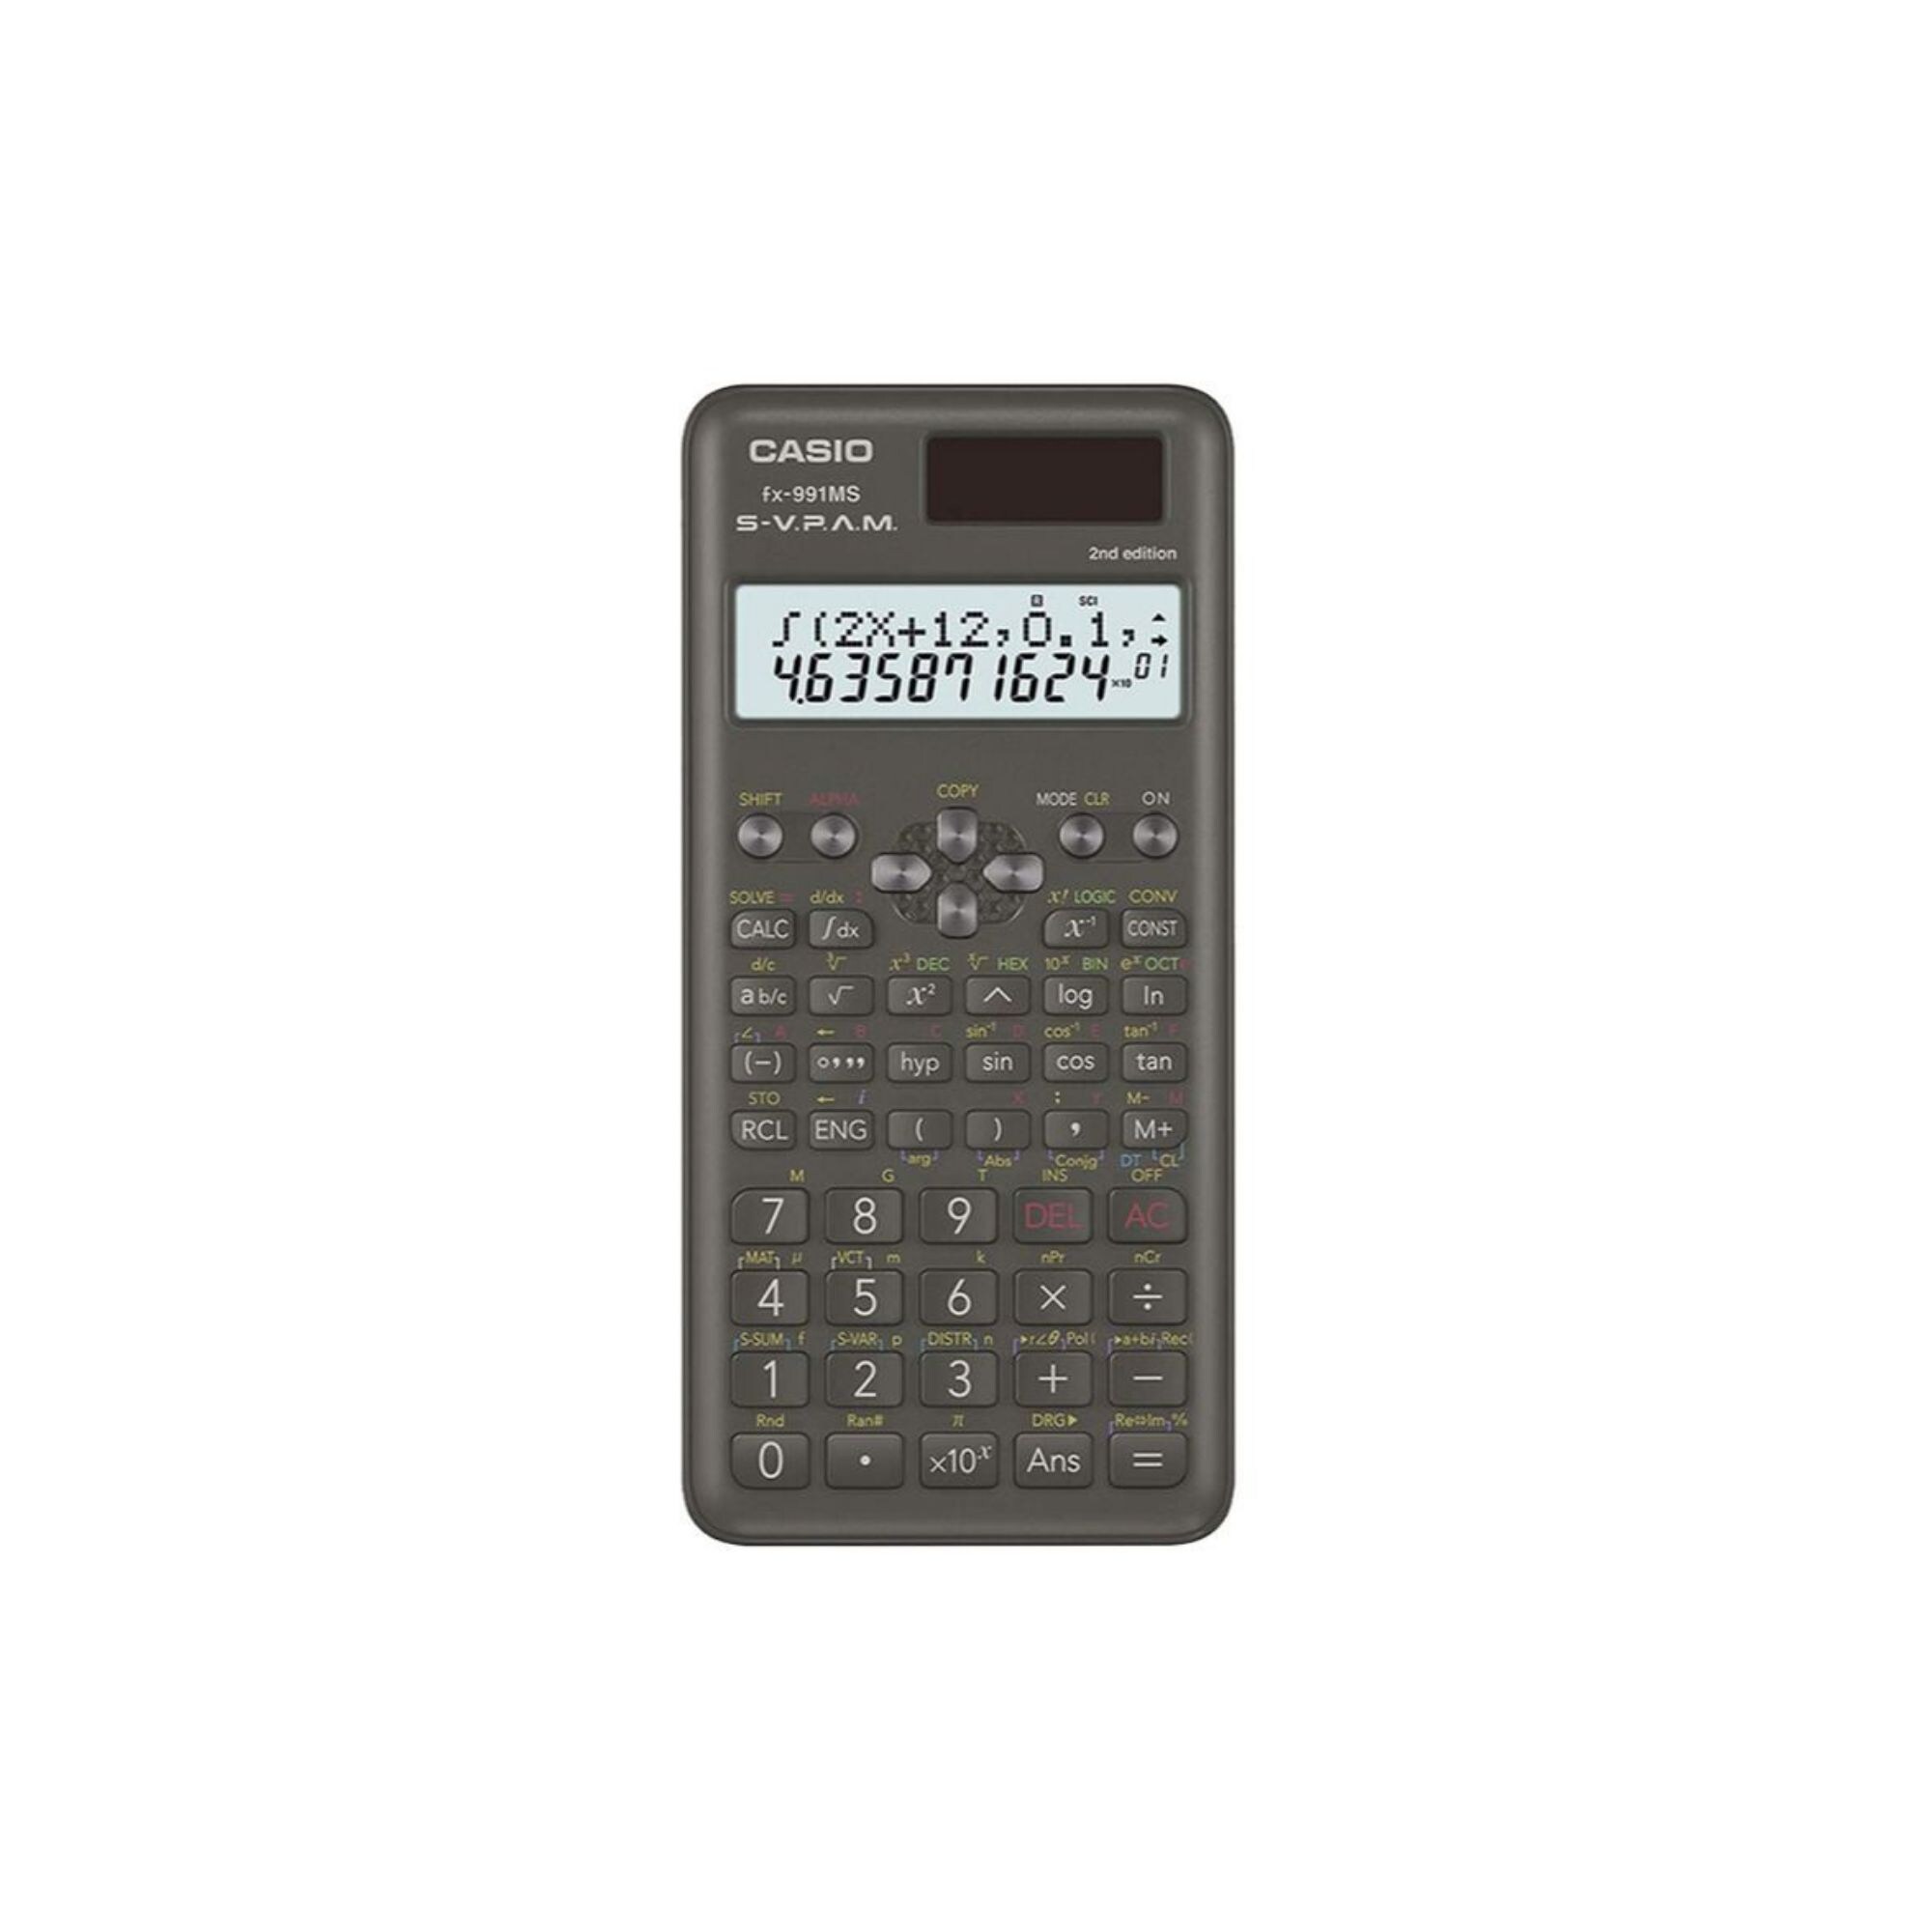 Casio Fx-991Ms-2Nd Edition Scientific Calculator